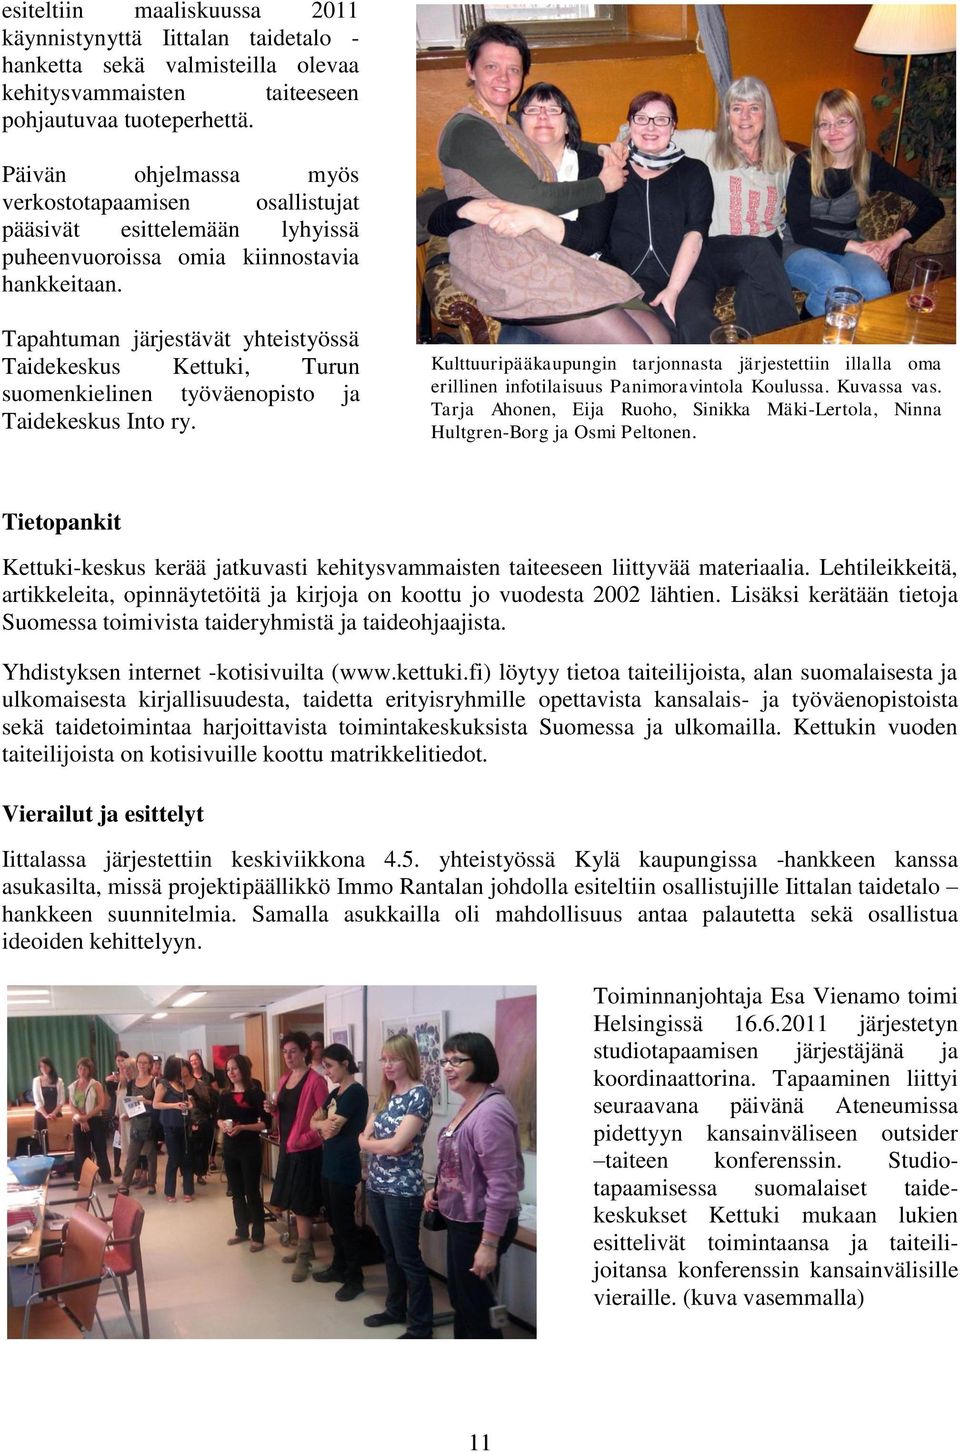 Tapahtuman järjestävät yhteistyössä Taidekeskus Kettuki, Turun suomenkielinen työväenopisto ja Taidekeskus Into ry.